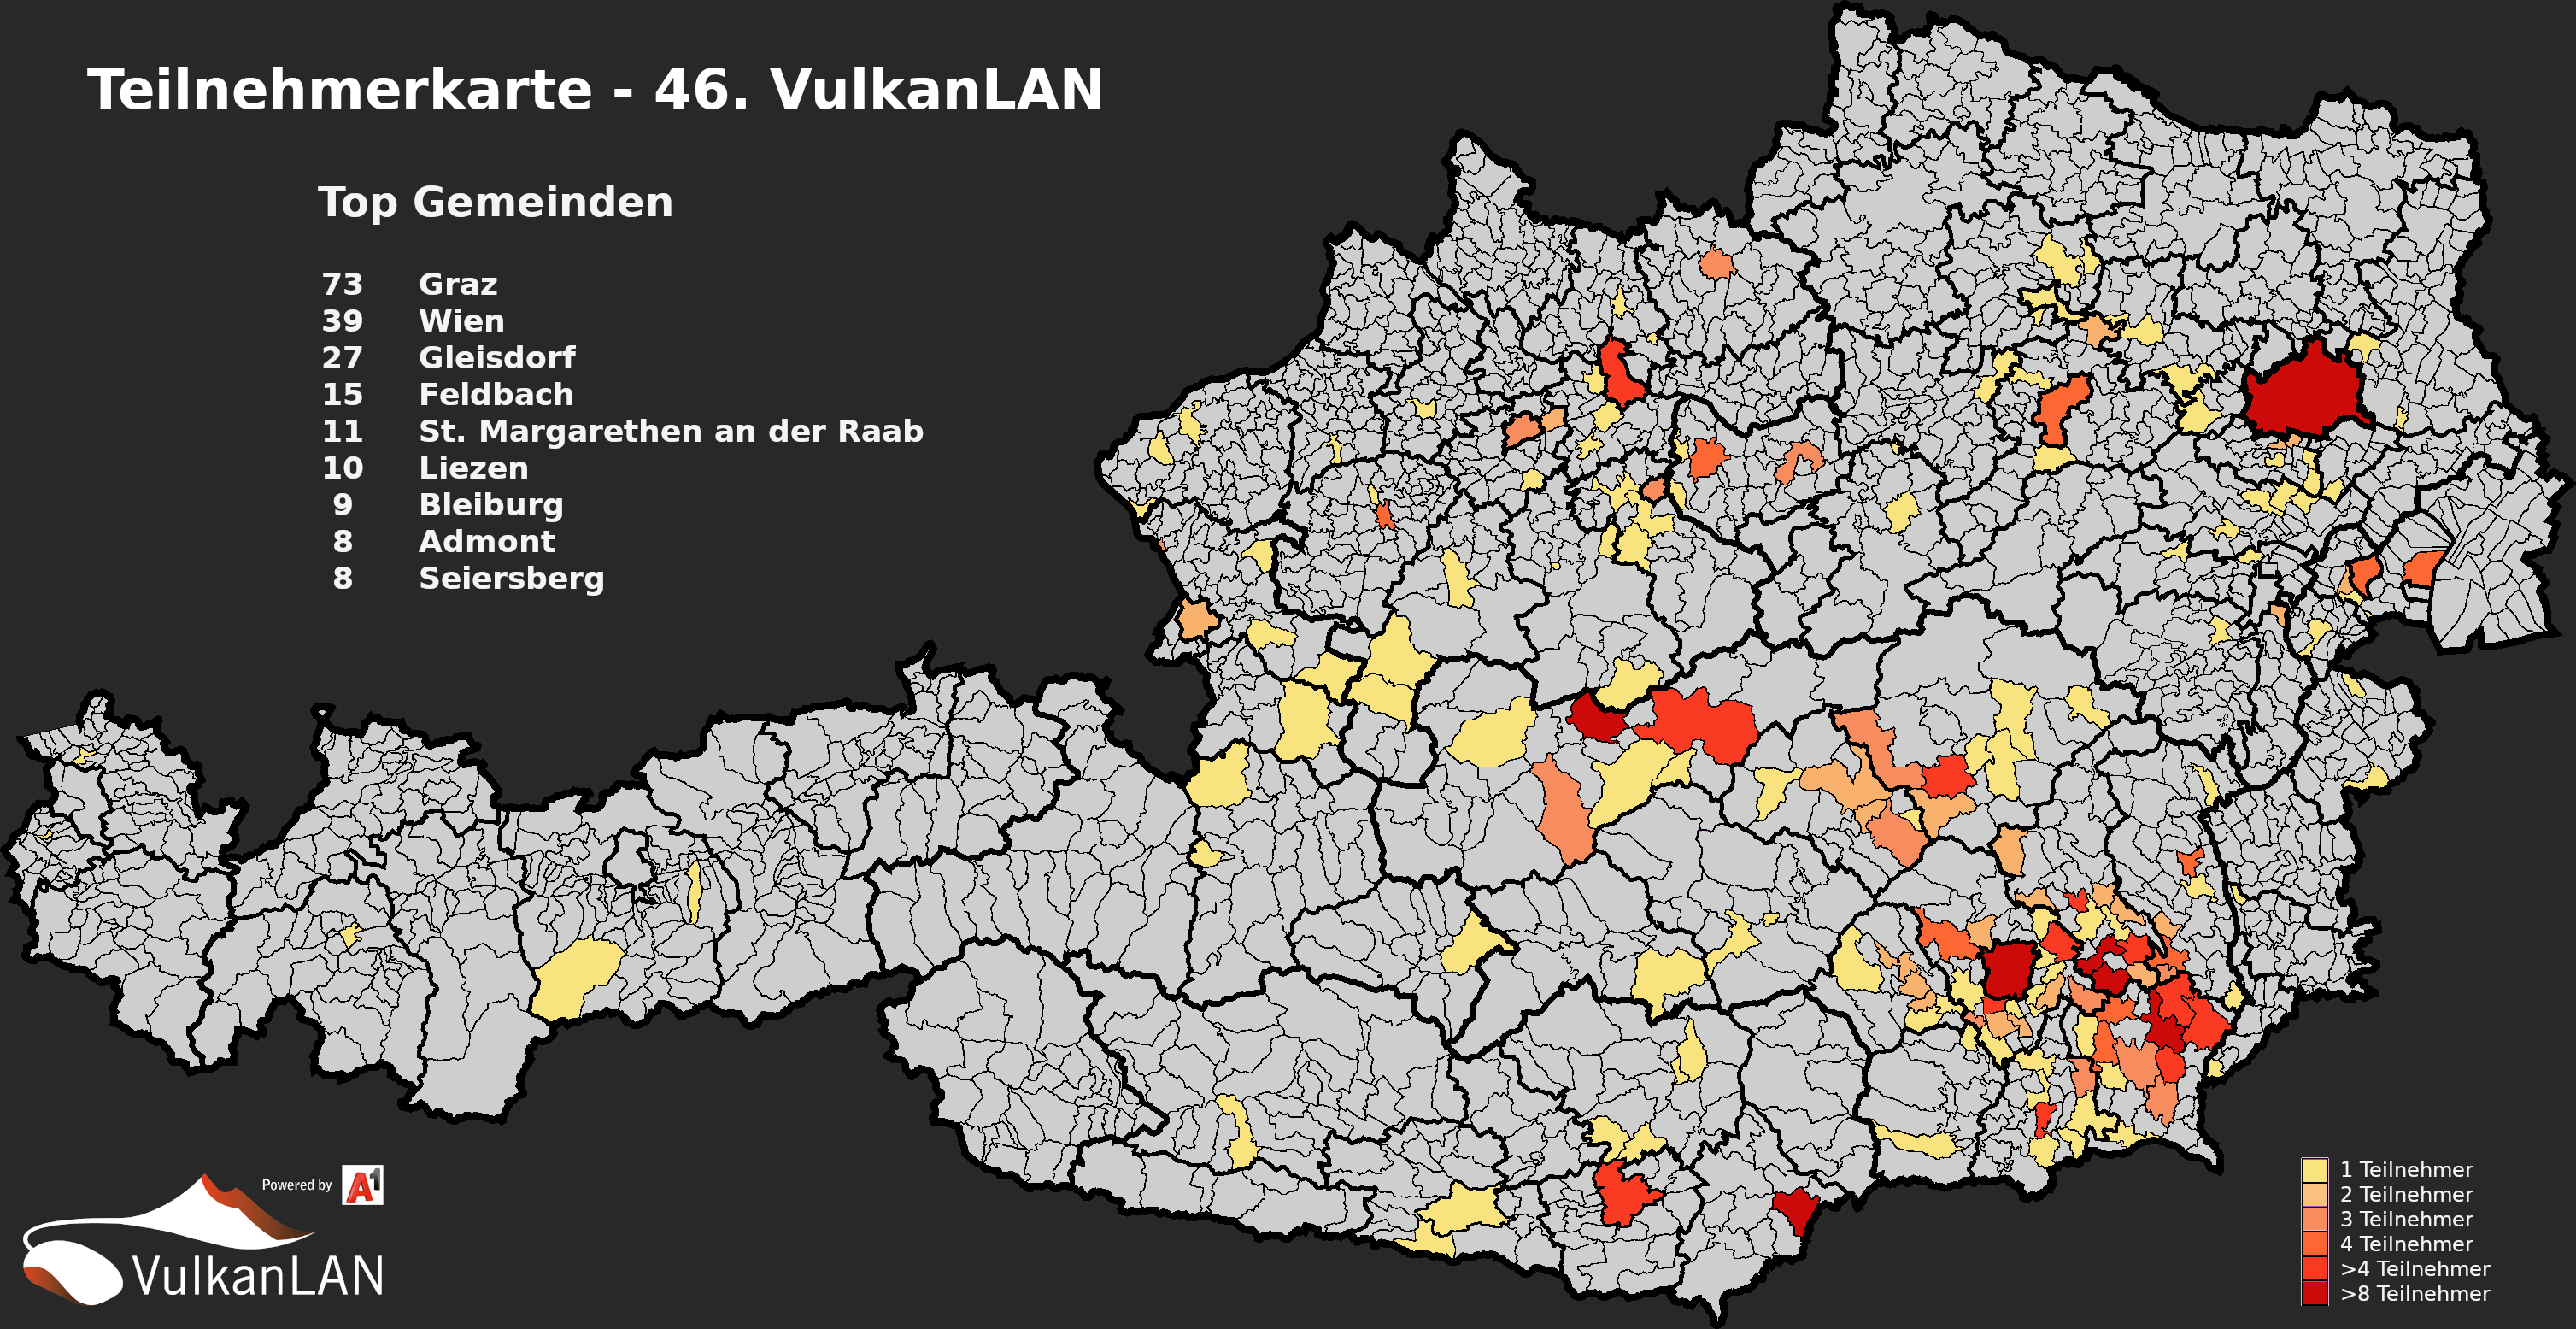 46.VulkanLAN Gemeinden2